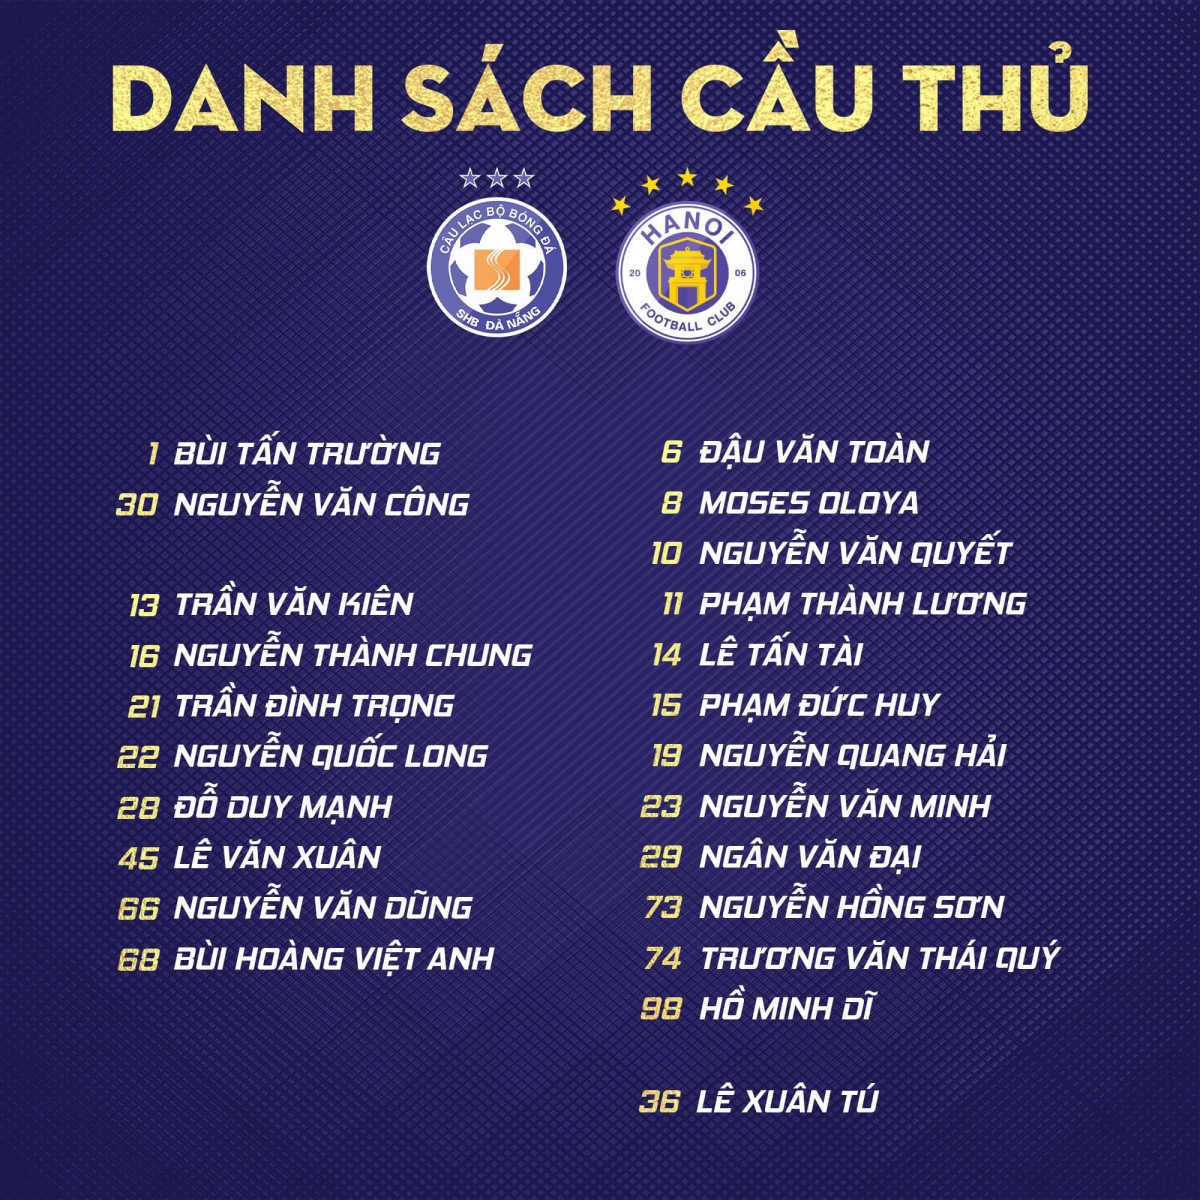 Hà Nội FC có đúng 1 ngoại binh để đấu với Đà Nẵng | VOV.VN